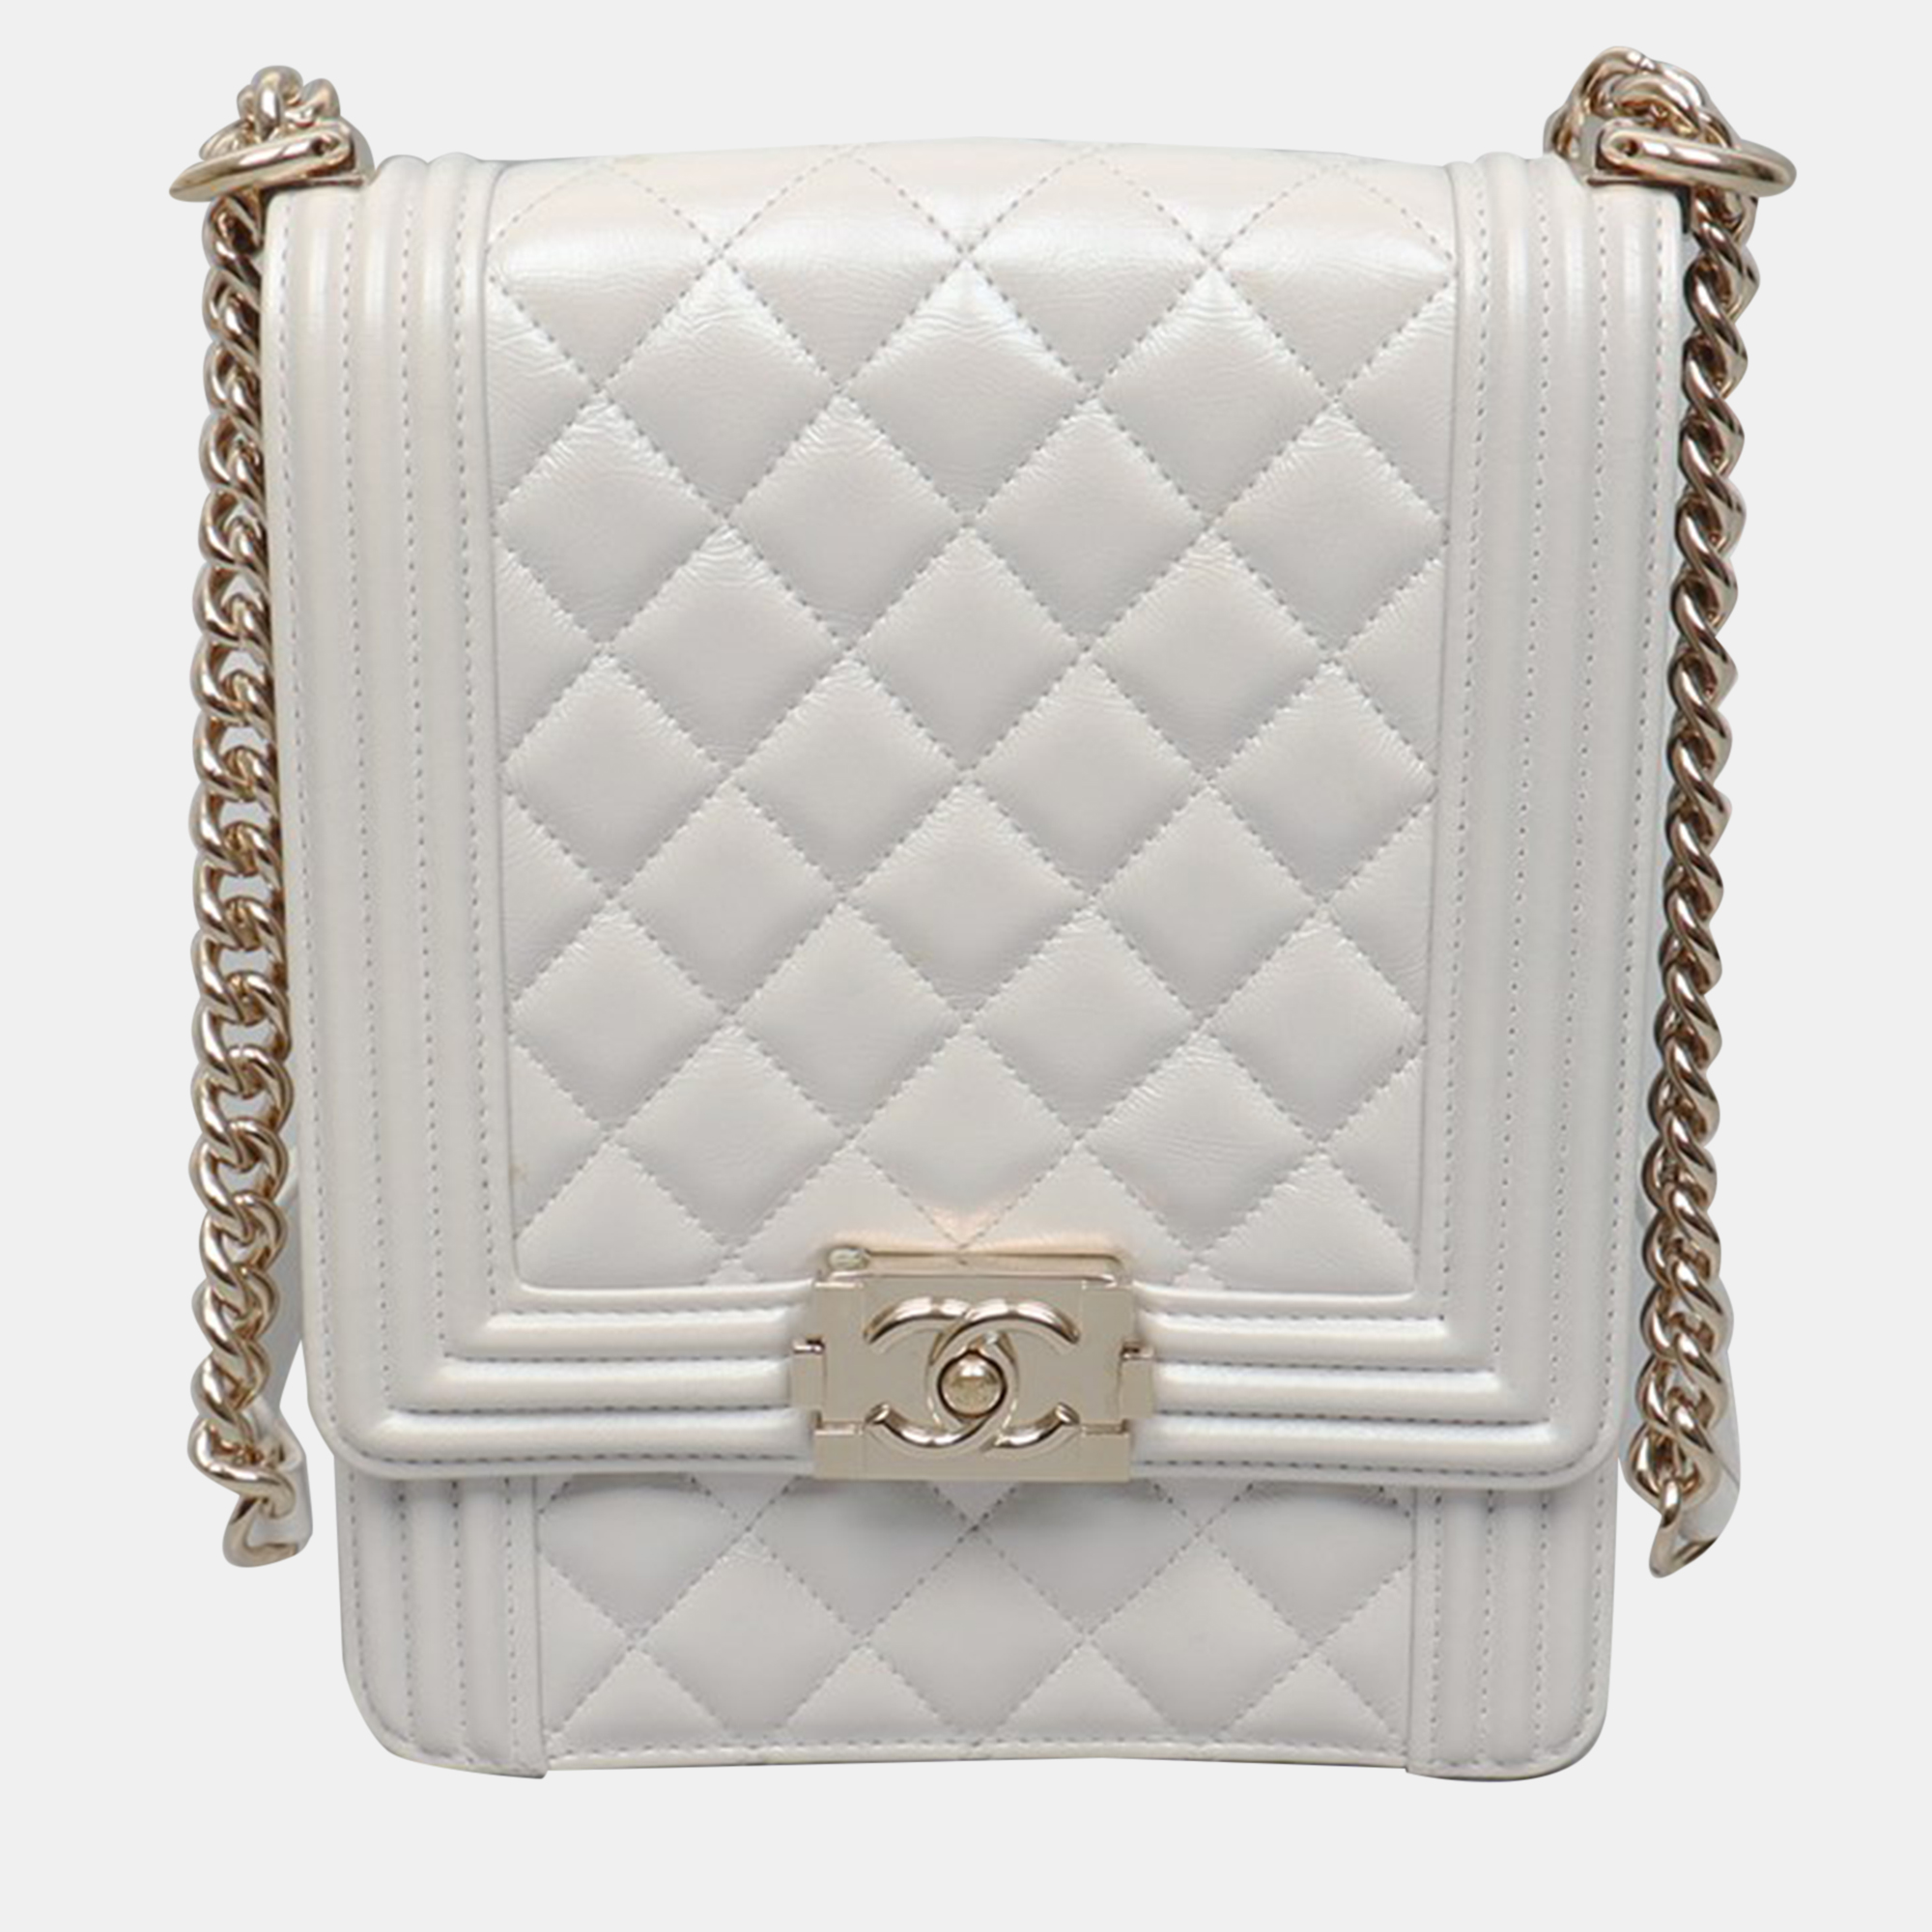 Chanel boy flap bag